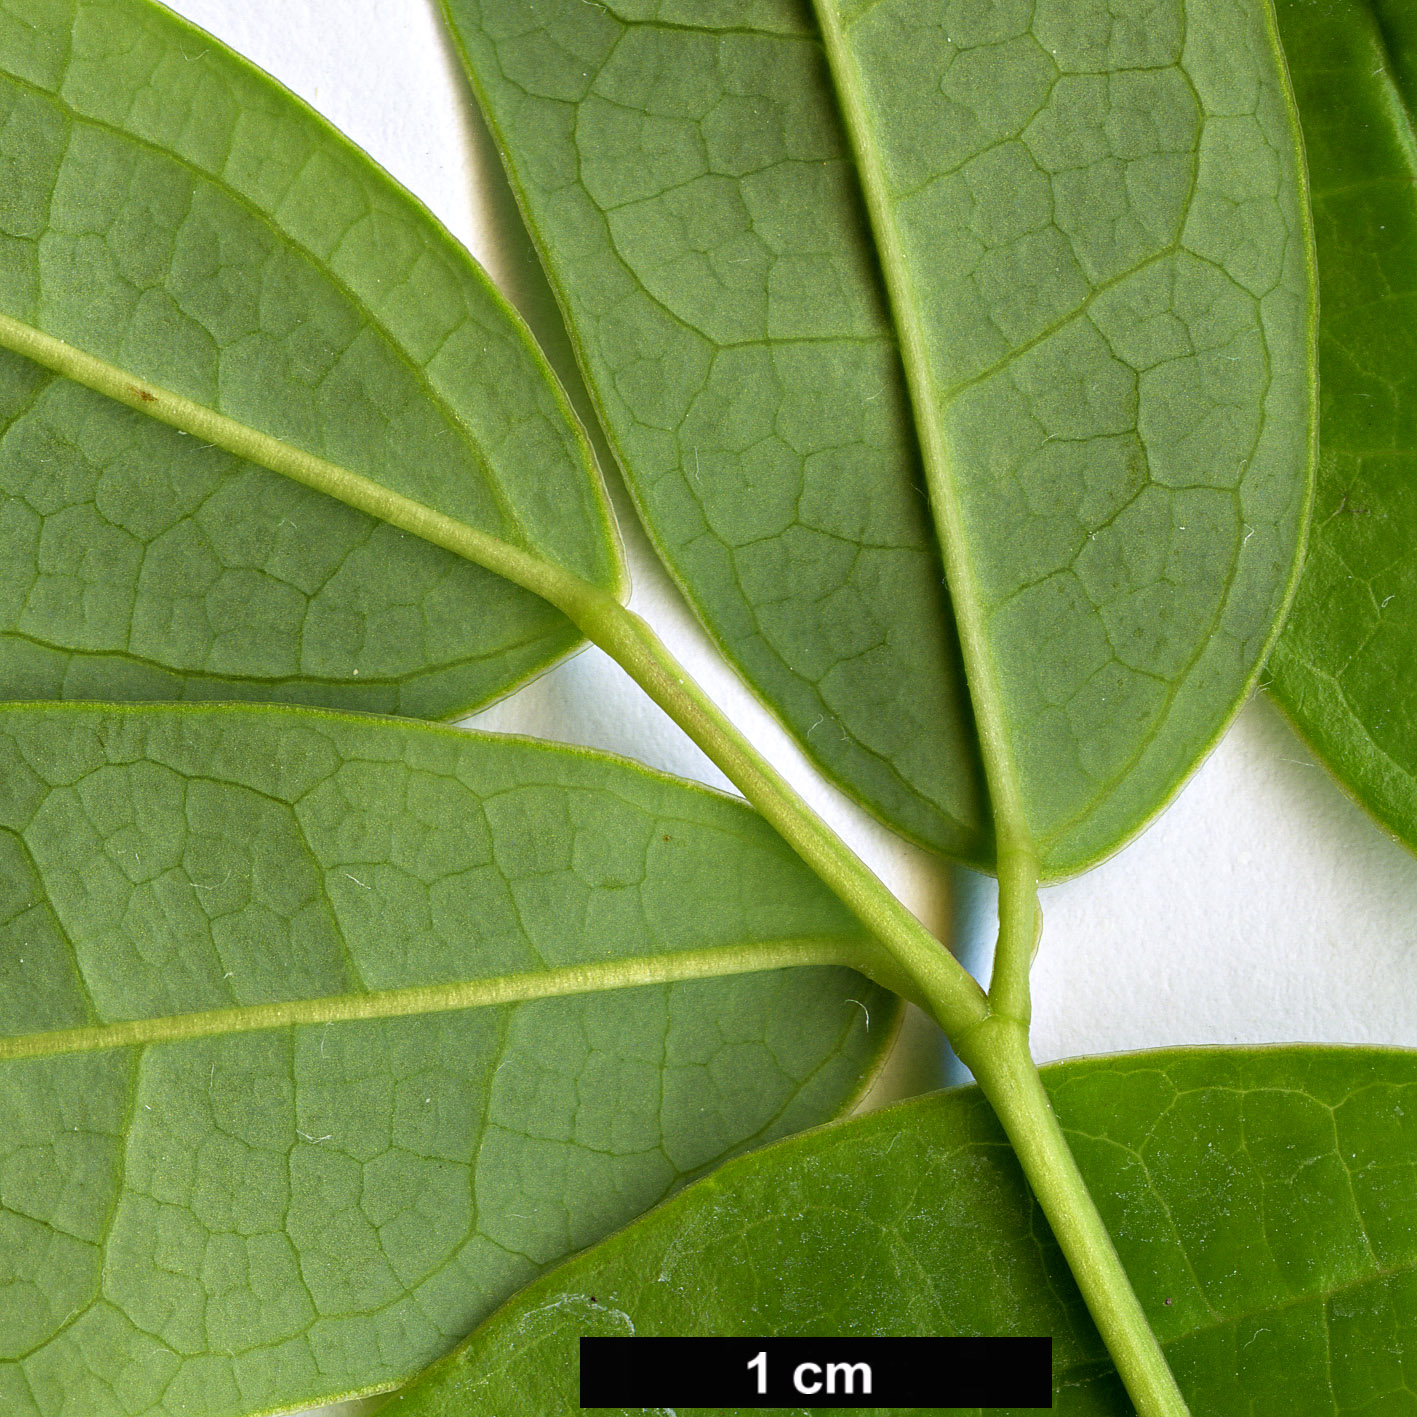 High resolution image: Family: Lardizabalaceae - Genus: Stauntonia - Taxon: aff. libera